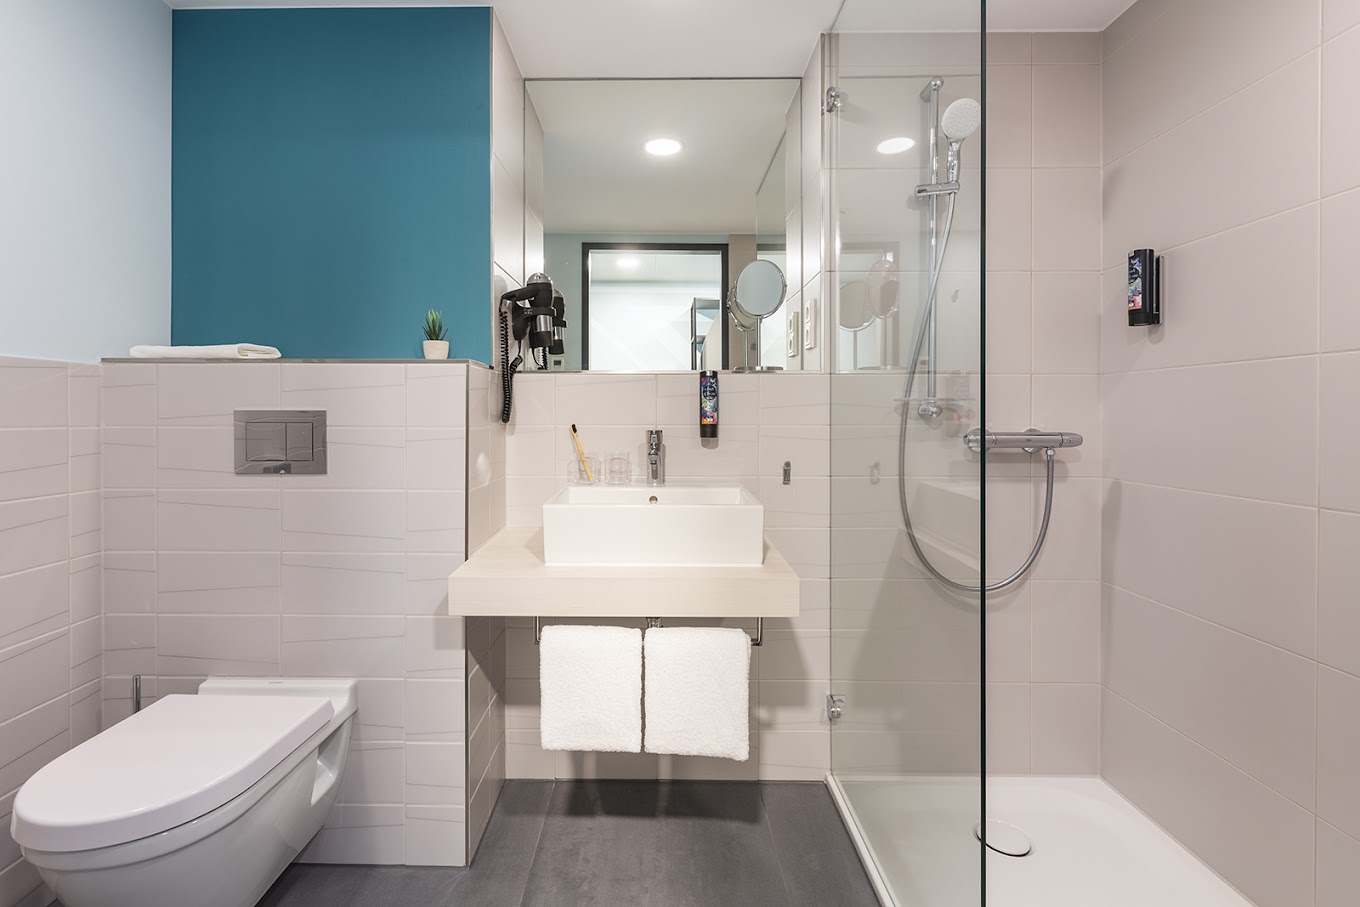 The Niu Seven otelinin banyolarında saç kurutma makinesi, duş ve banyo malzemeleri bulunmaktadır. 